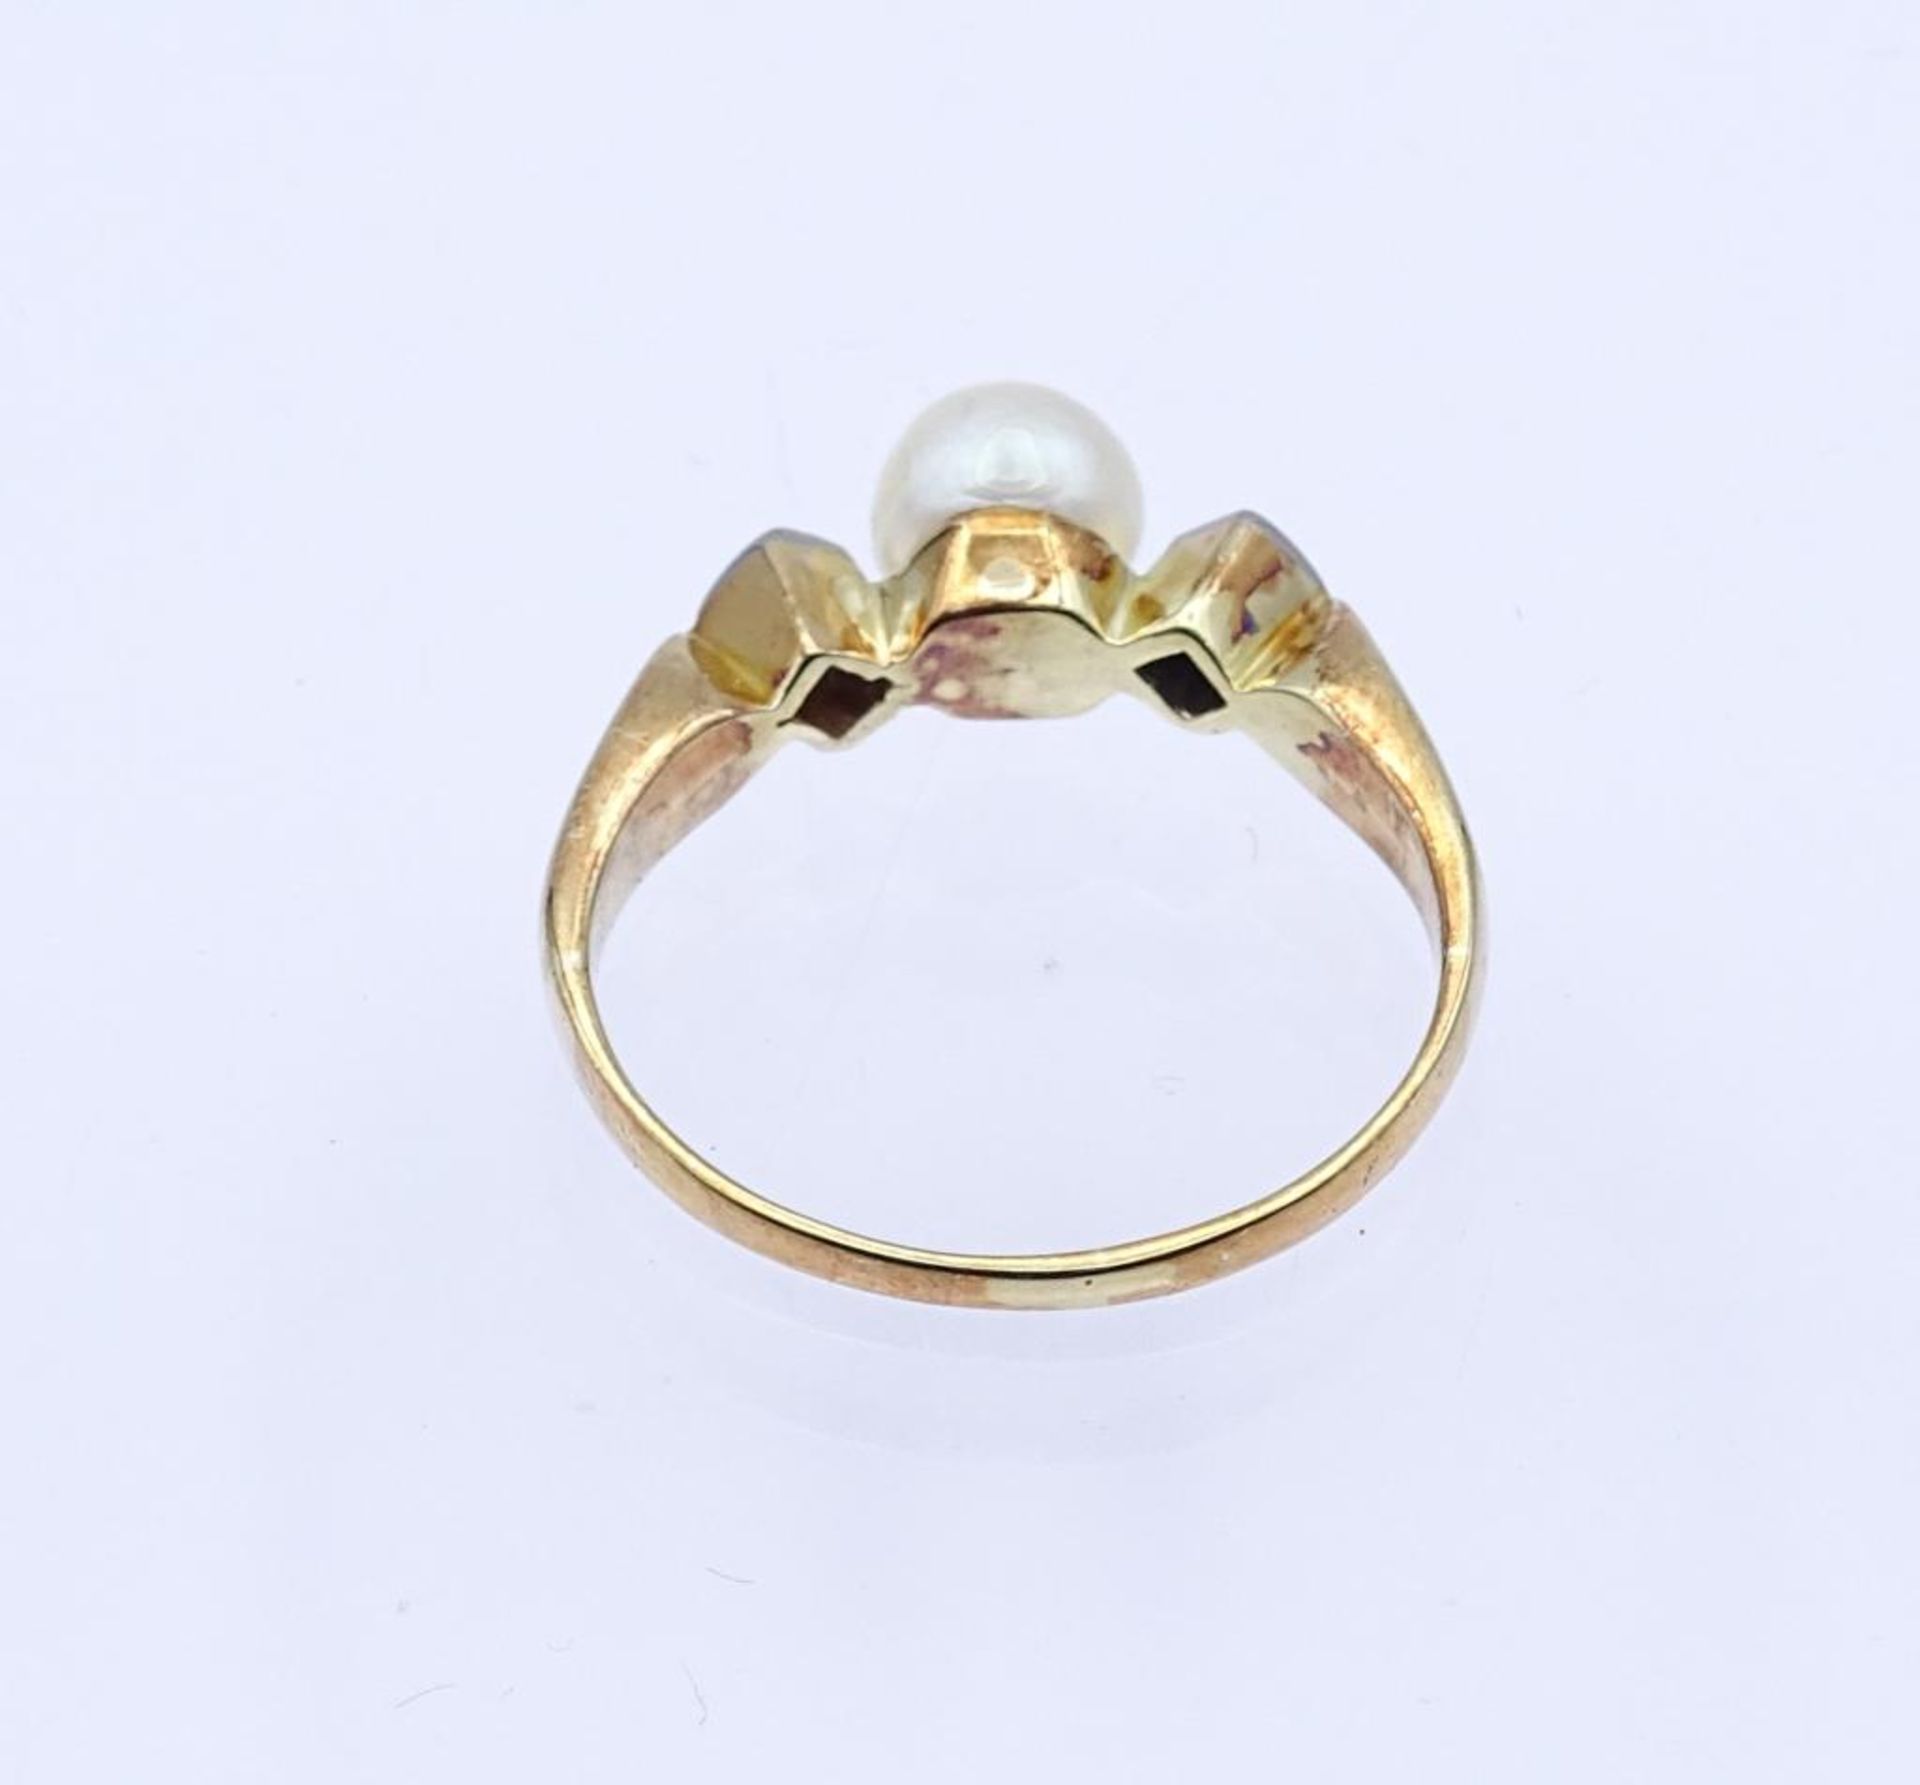 585er GG Ring mit Diamanten und Perle, 2,1gr., RG 56- - -22.61 % buyer's premium on the hammer - Bild 4 aus 4